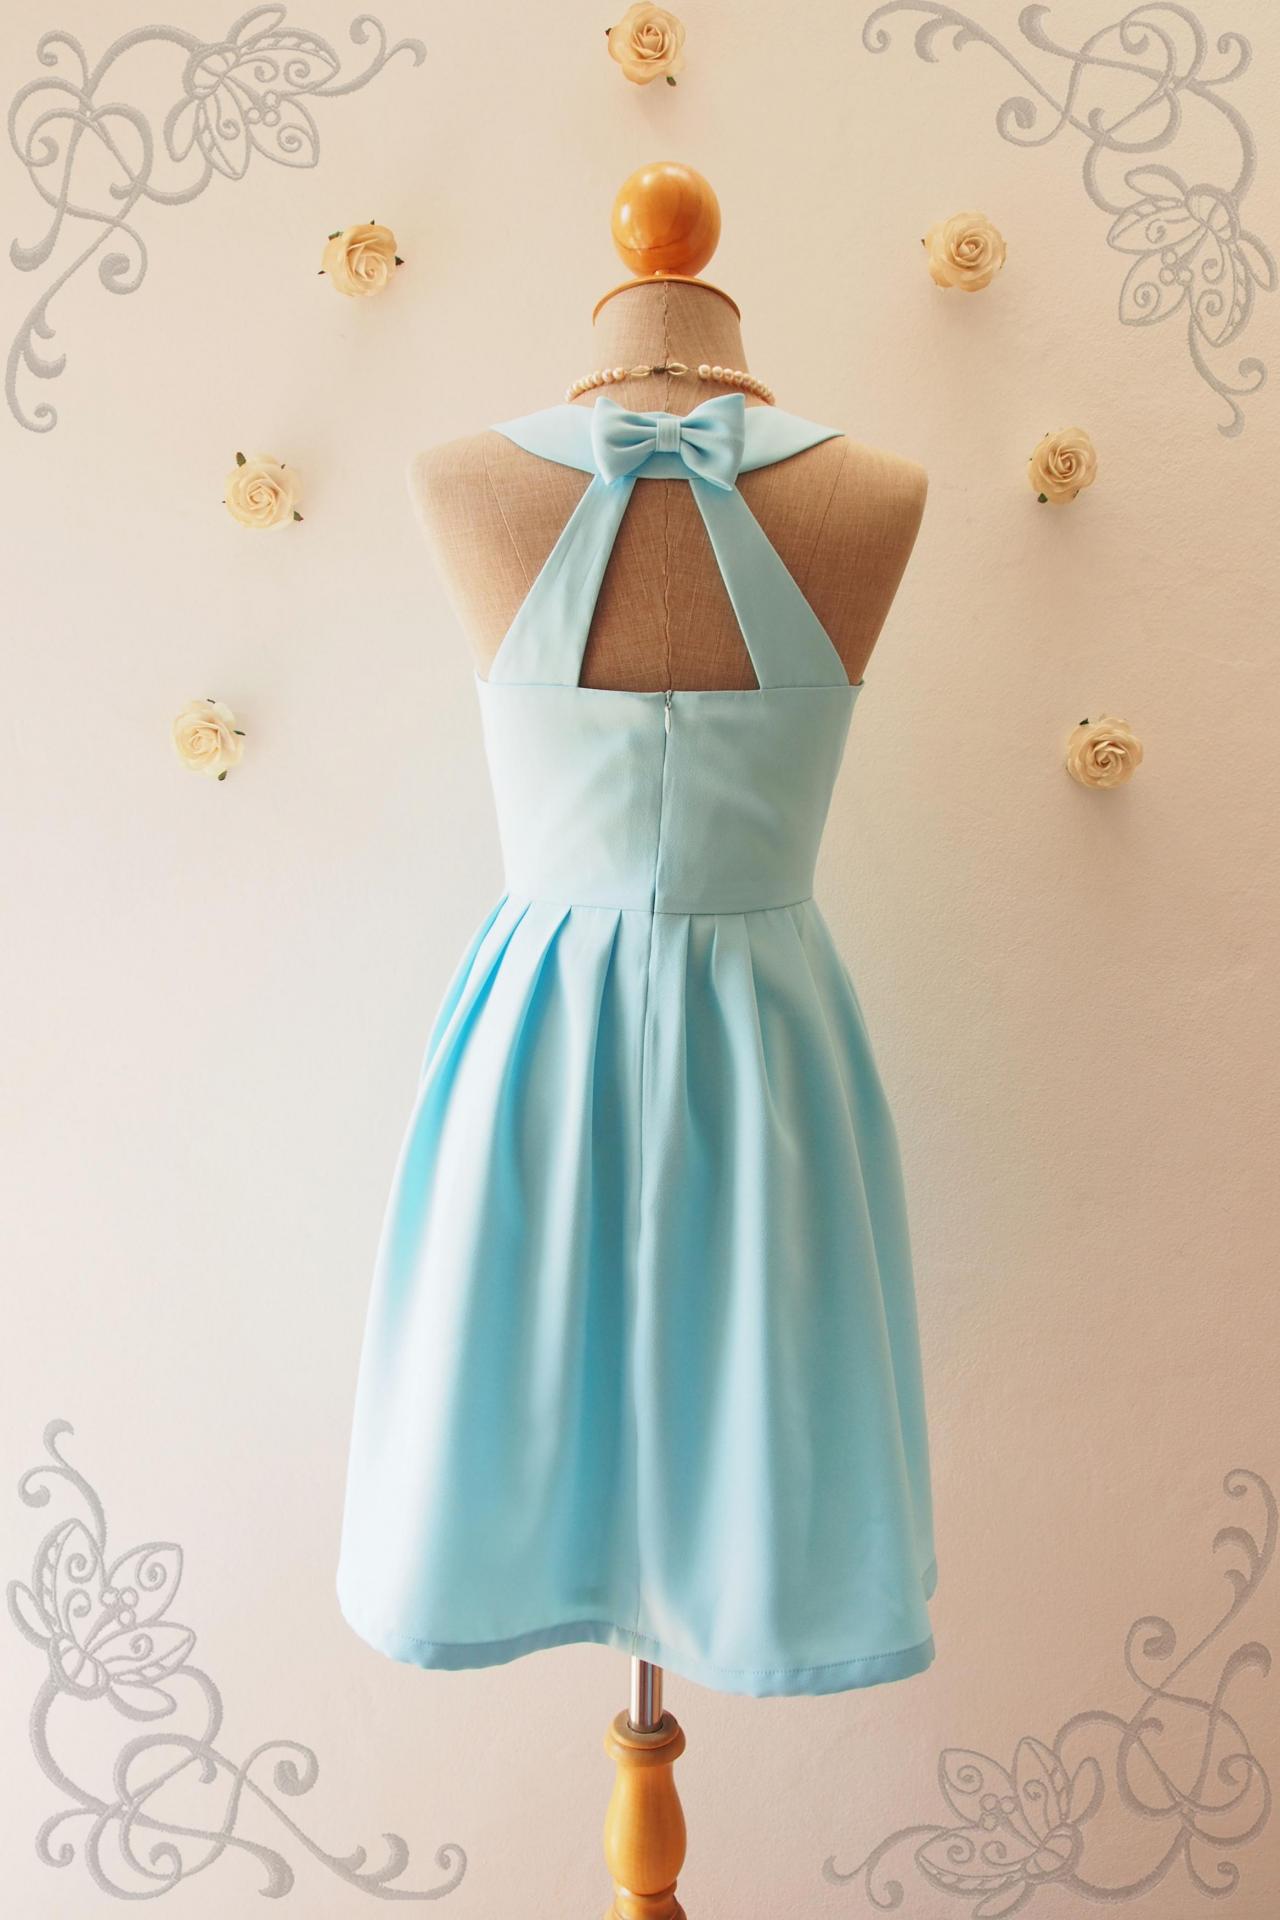 Love Potion - Blue Backless Dress, Blue Bridesmaid Dress, Baby Blue Dress, Blue Party Dress, Vintage Inspired, Audrey Hepburn Dress, Skater